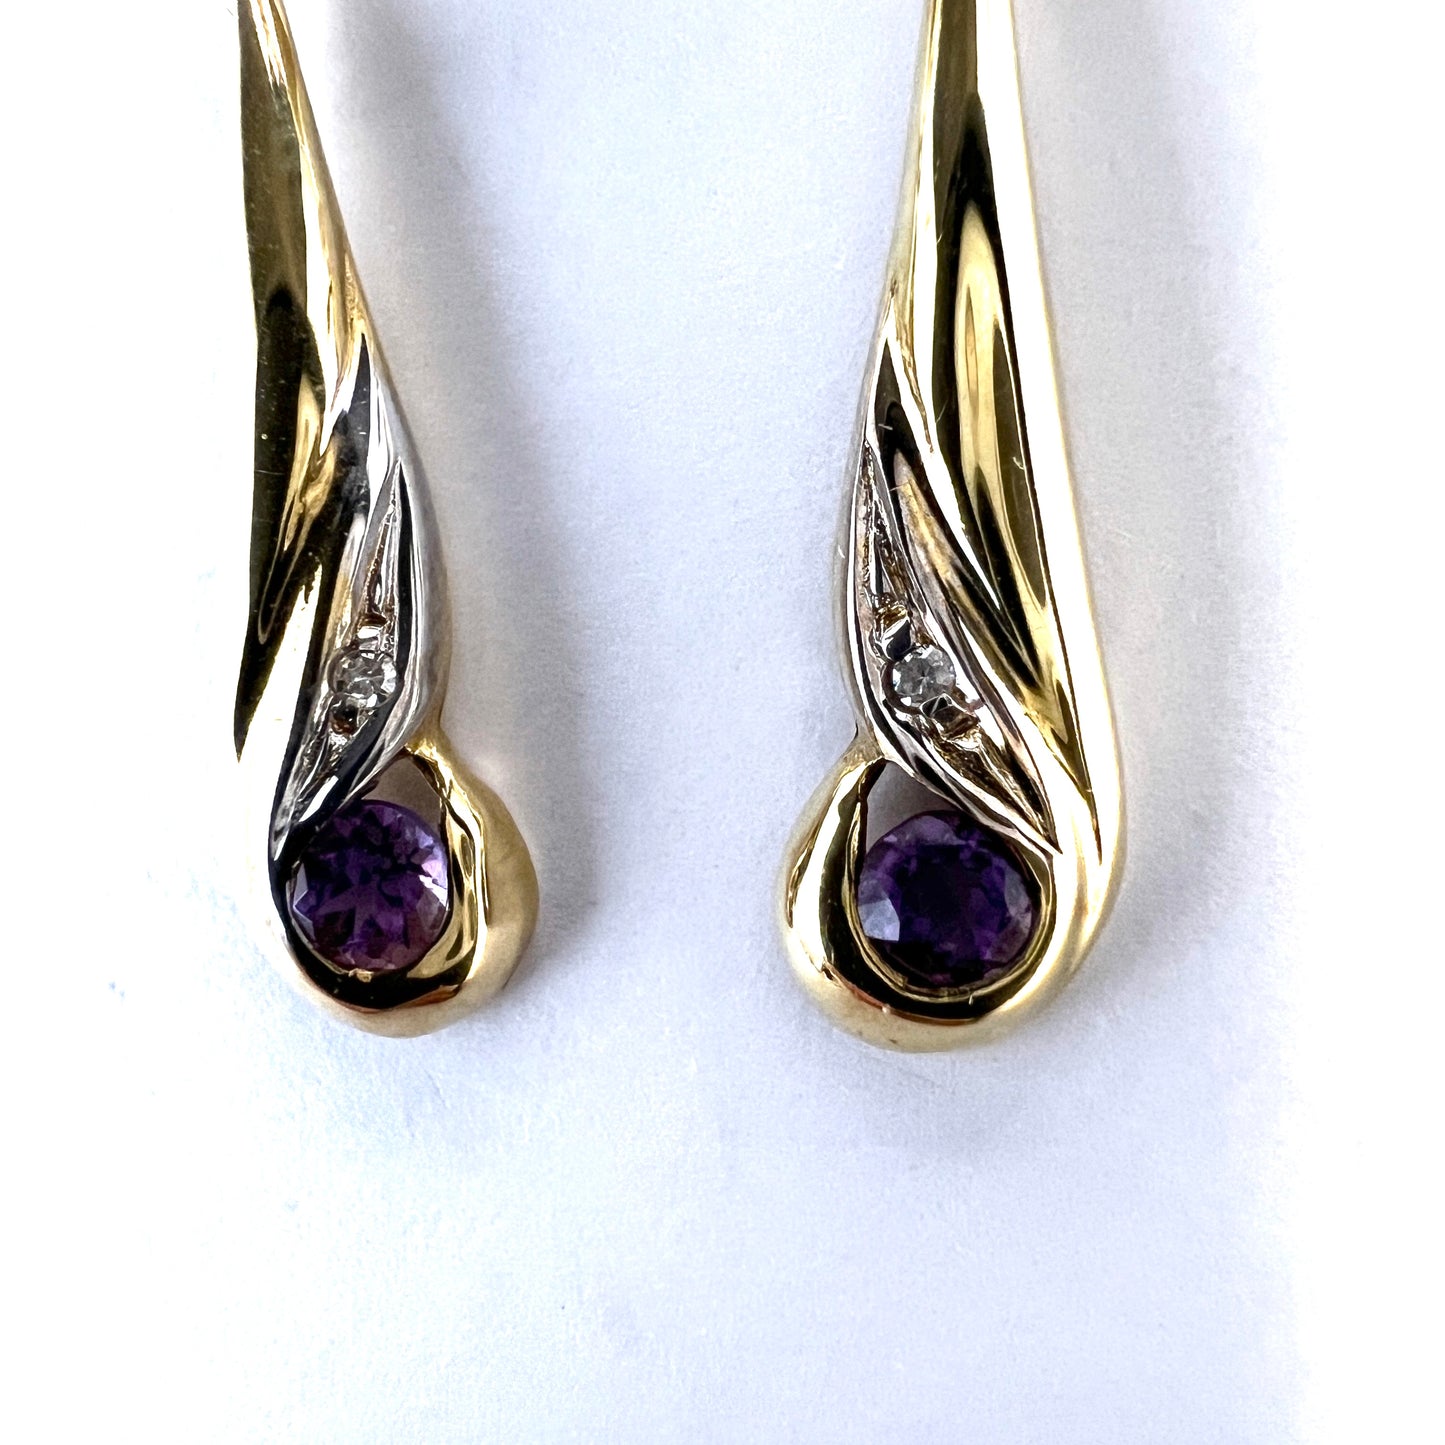 Vintage 18k Gold Diamond Amethyst Dangle Earrings.